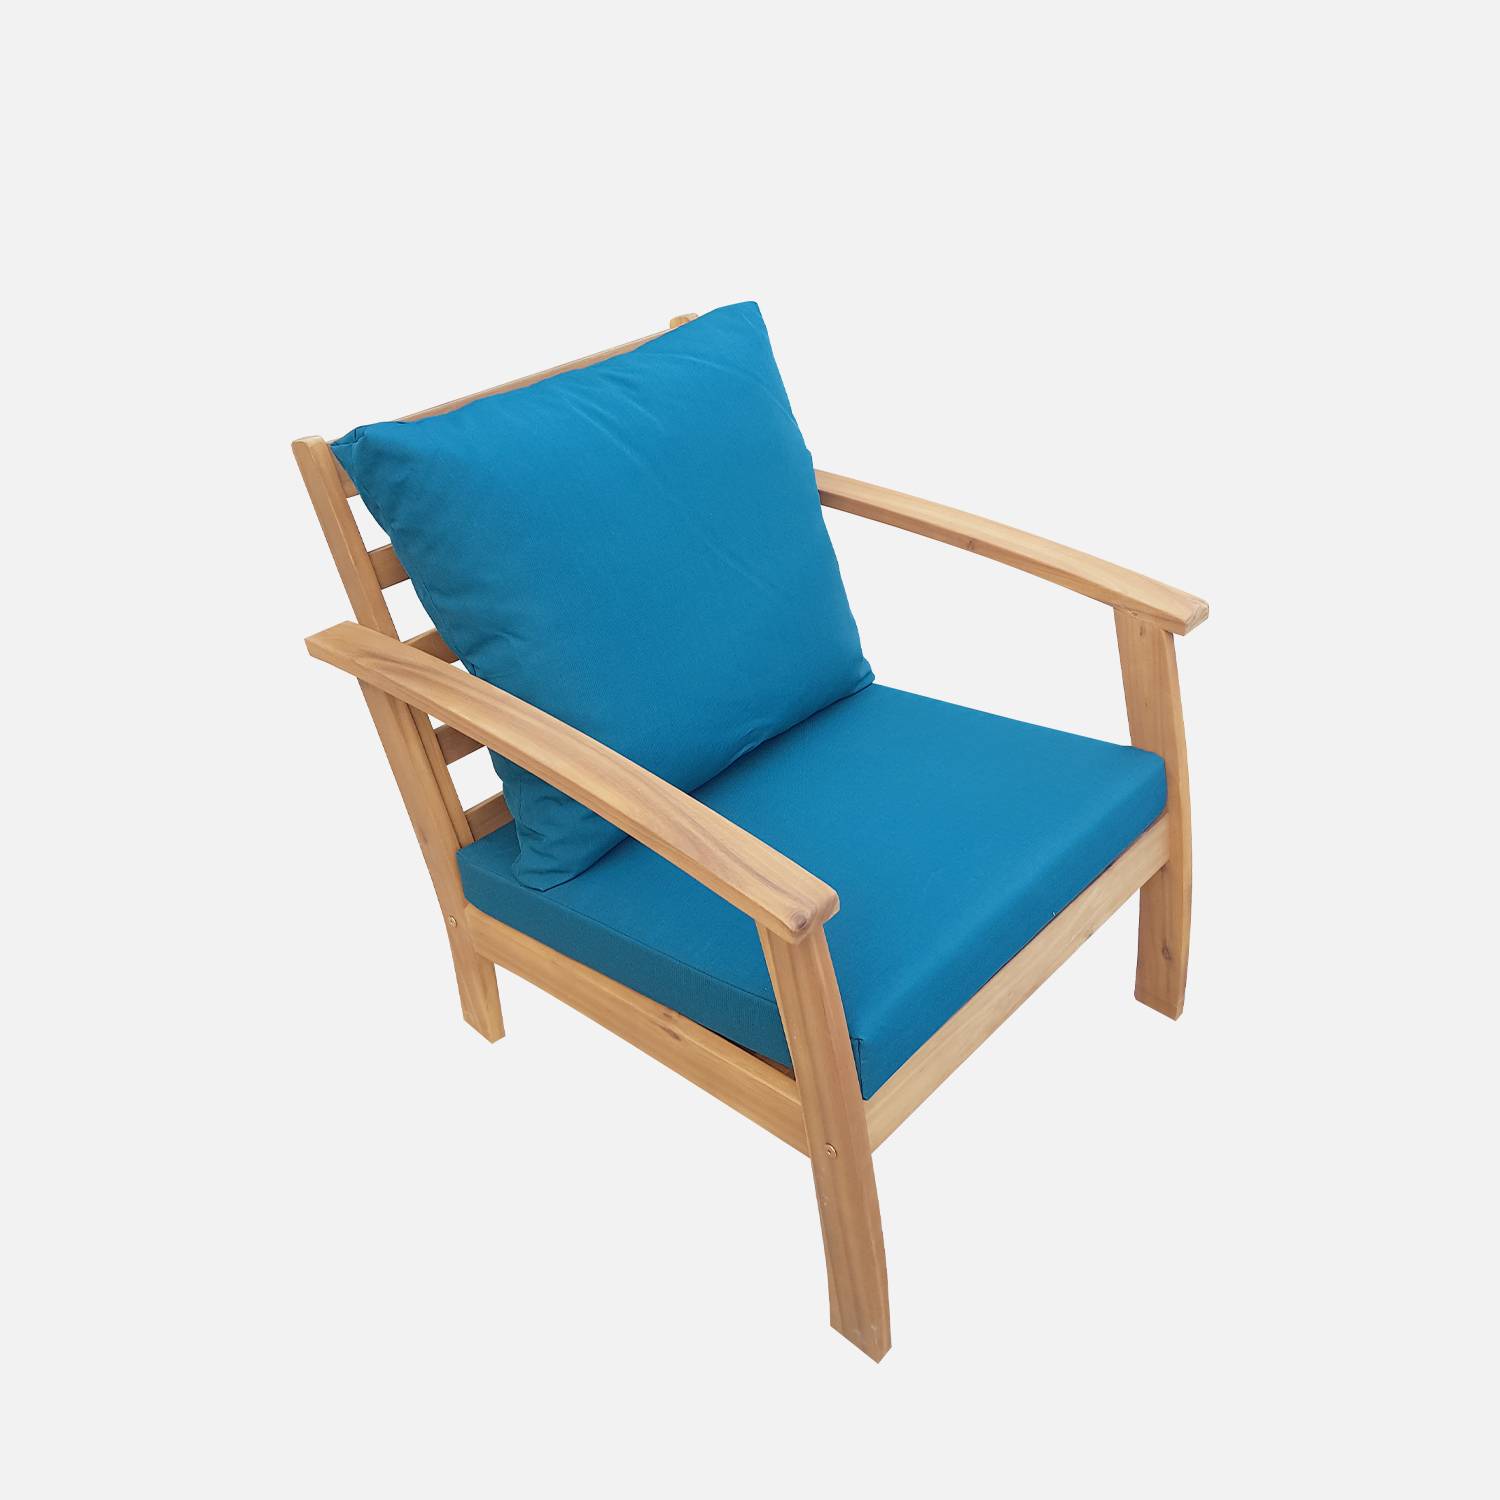 Salon de jardin en bois 4 places - Ushuaïa - Coussins bleu canard, canapé, fauteuils et table basse en acacia, design Photo5